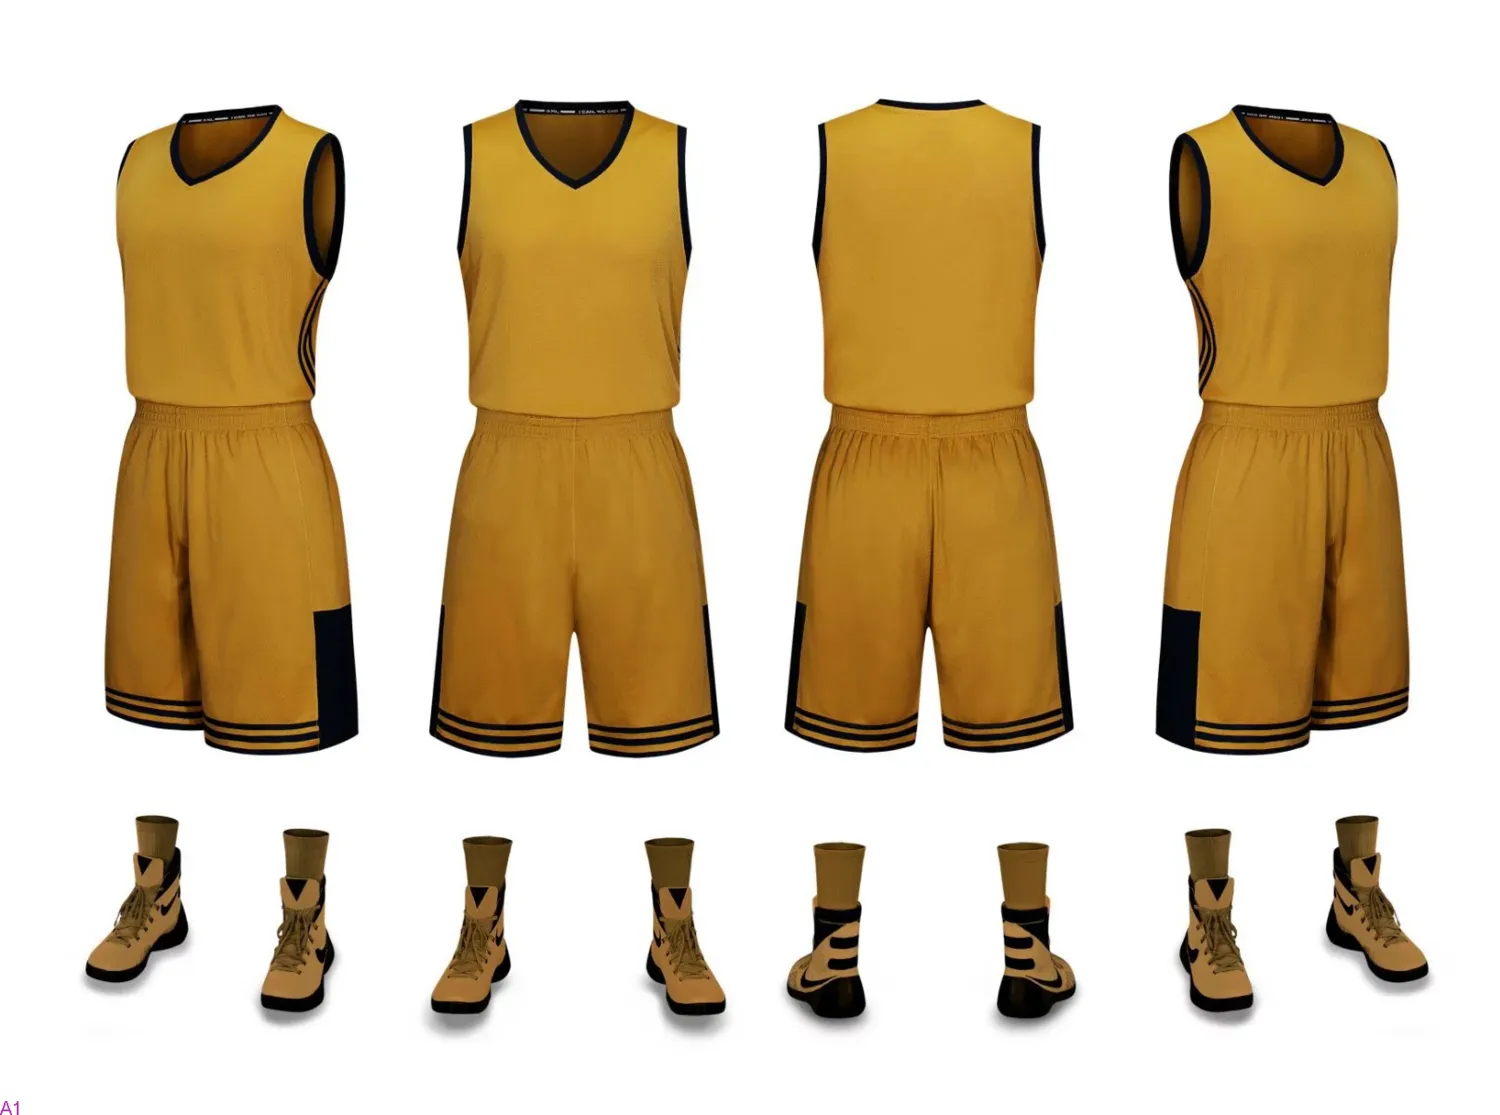 2019 جديد فارغة كرة السلة الفانيلة مطبوعة شعار رجالي حجم S-XXL رخيصة الثمن الشحن بسرعة جيدة نوعية جيدة الذهب الأحمر GR001N